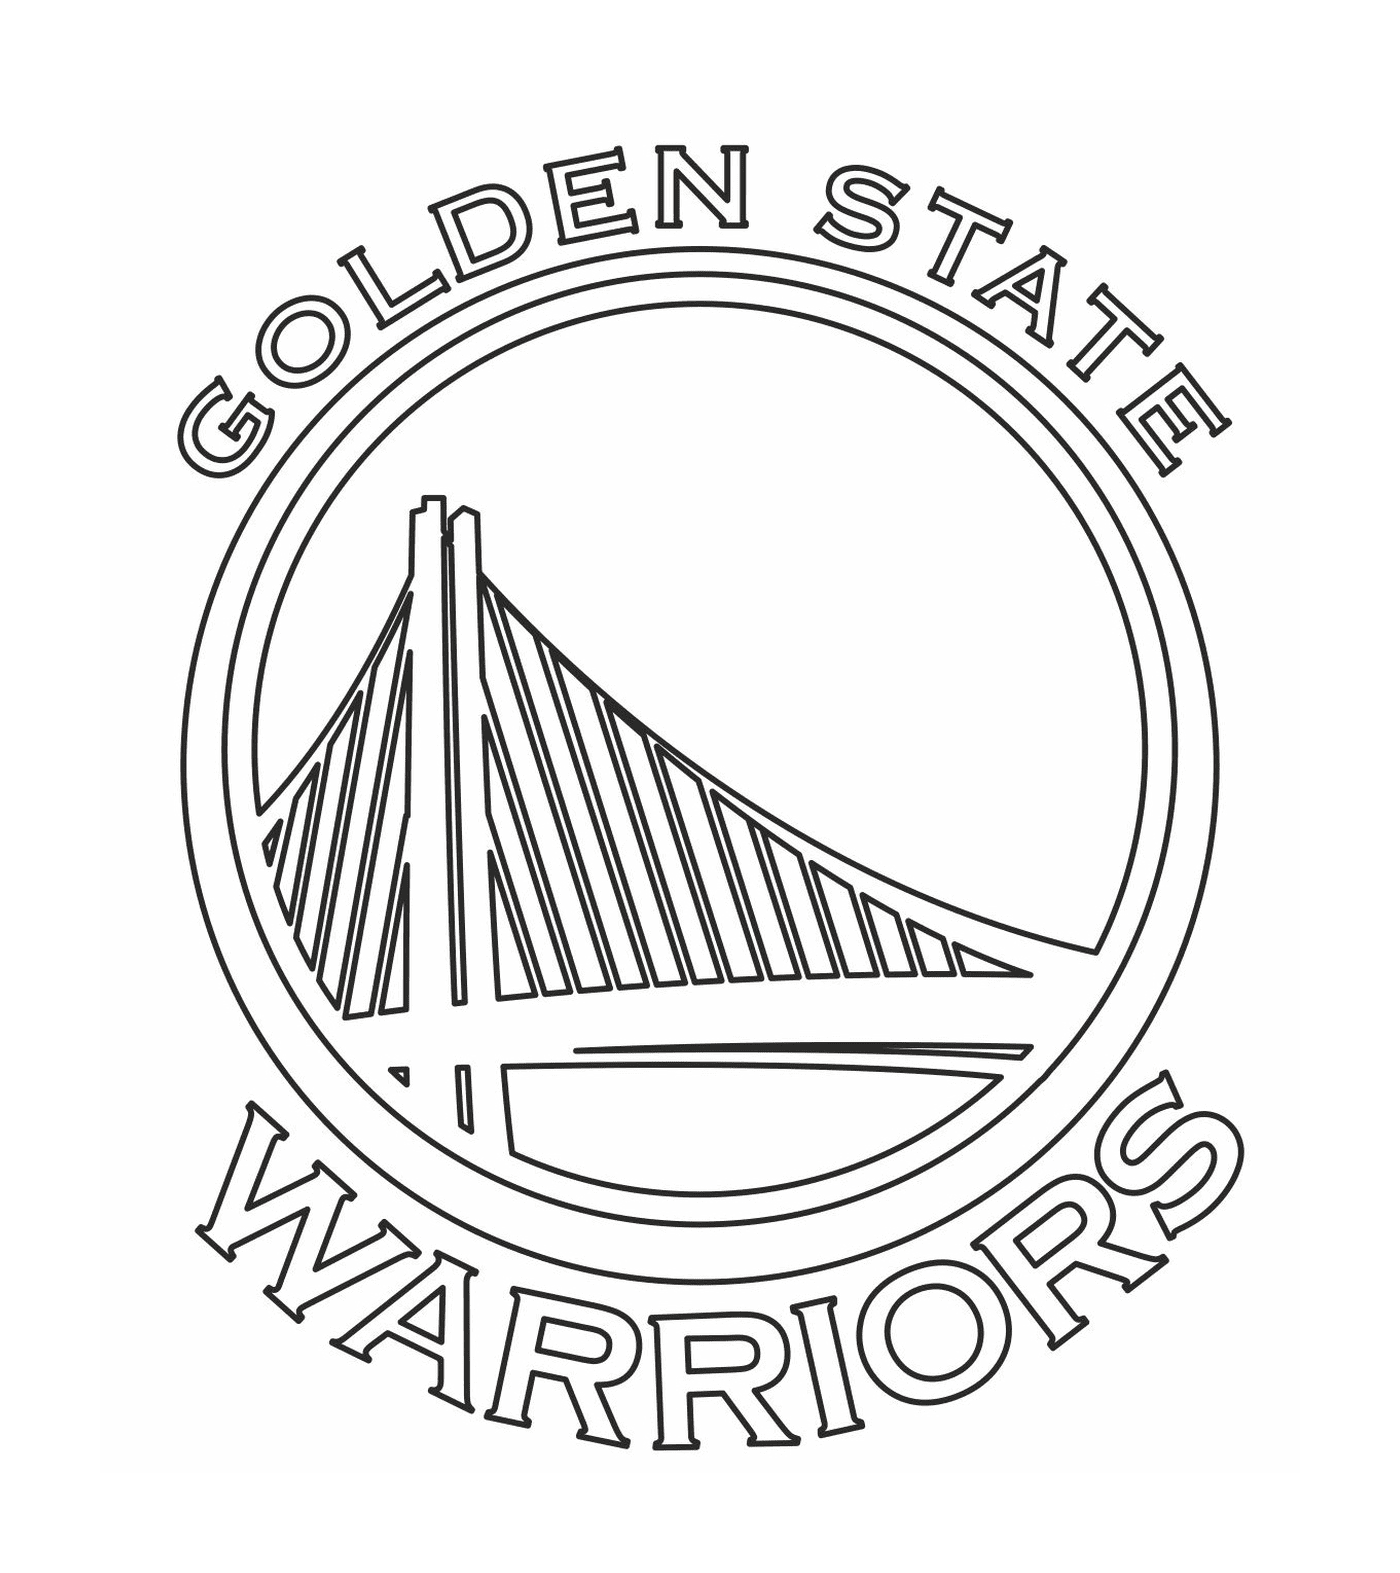  El logo de los Golden State Warriors de la NBA 